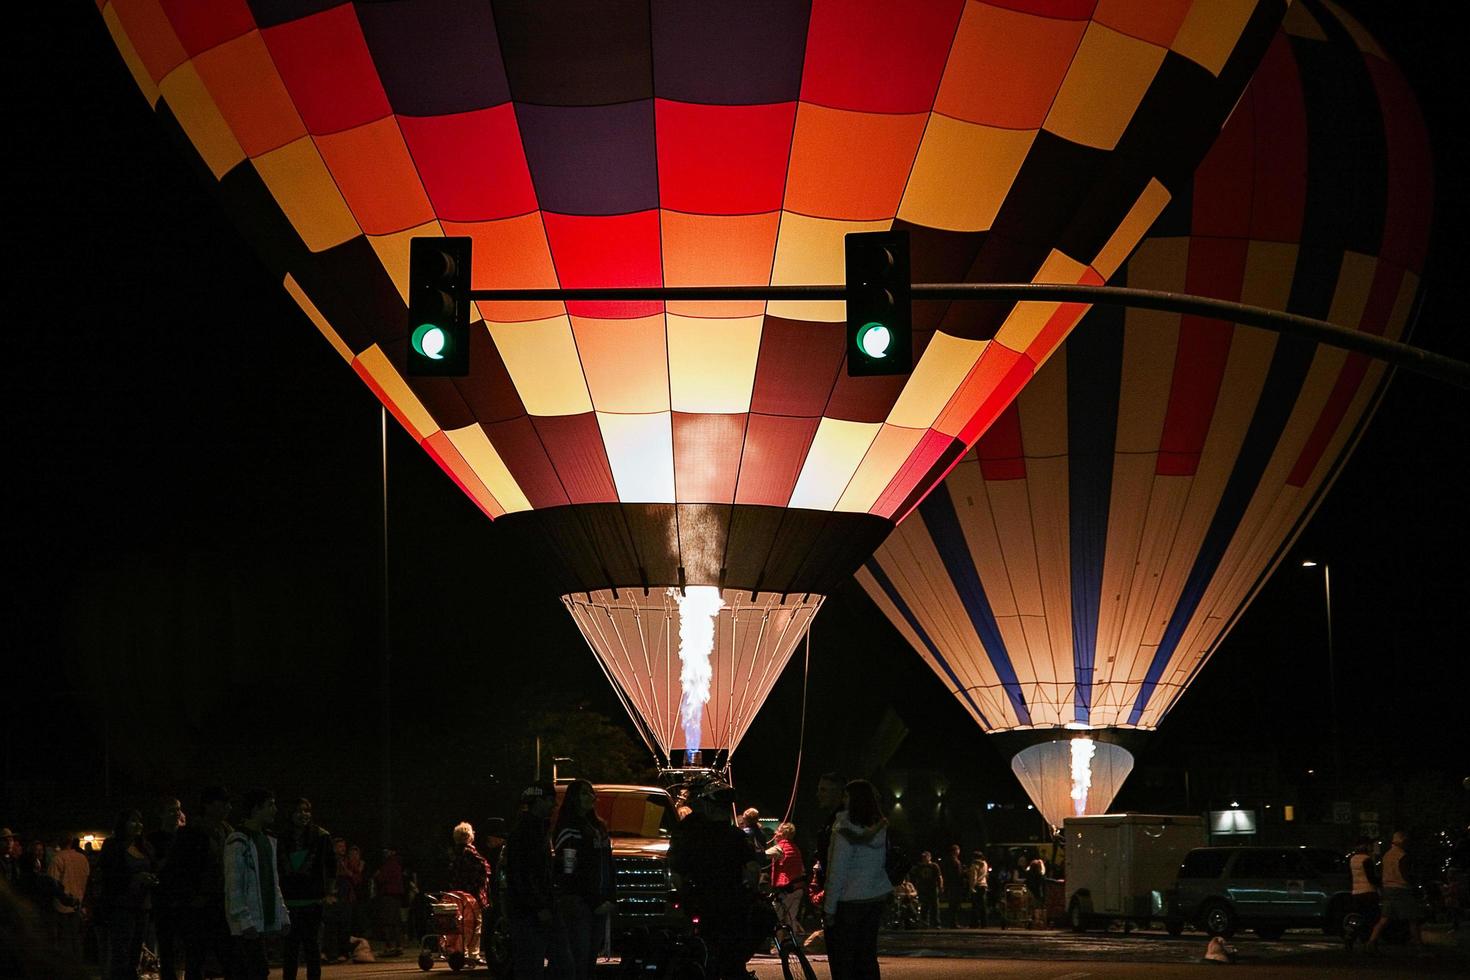 página, arizona, eua, 2009. festival noturno de balões foto